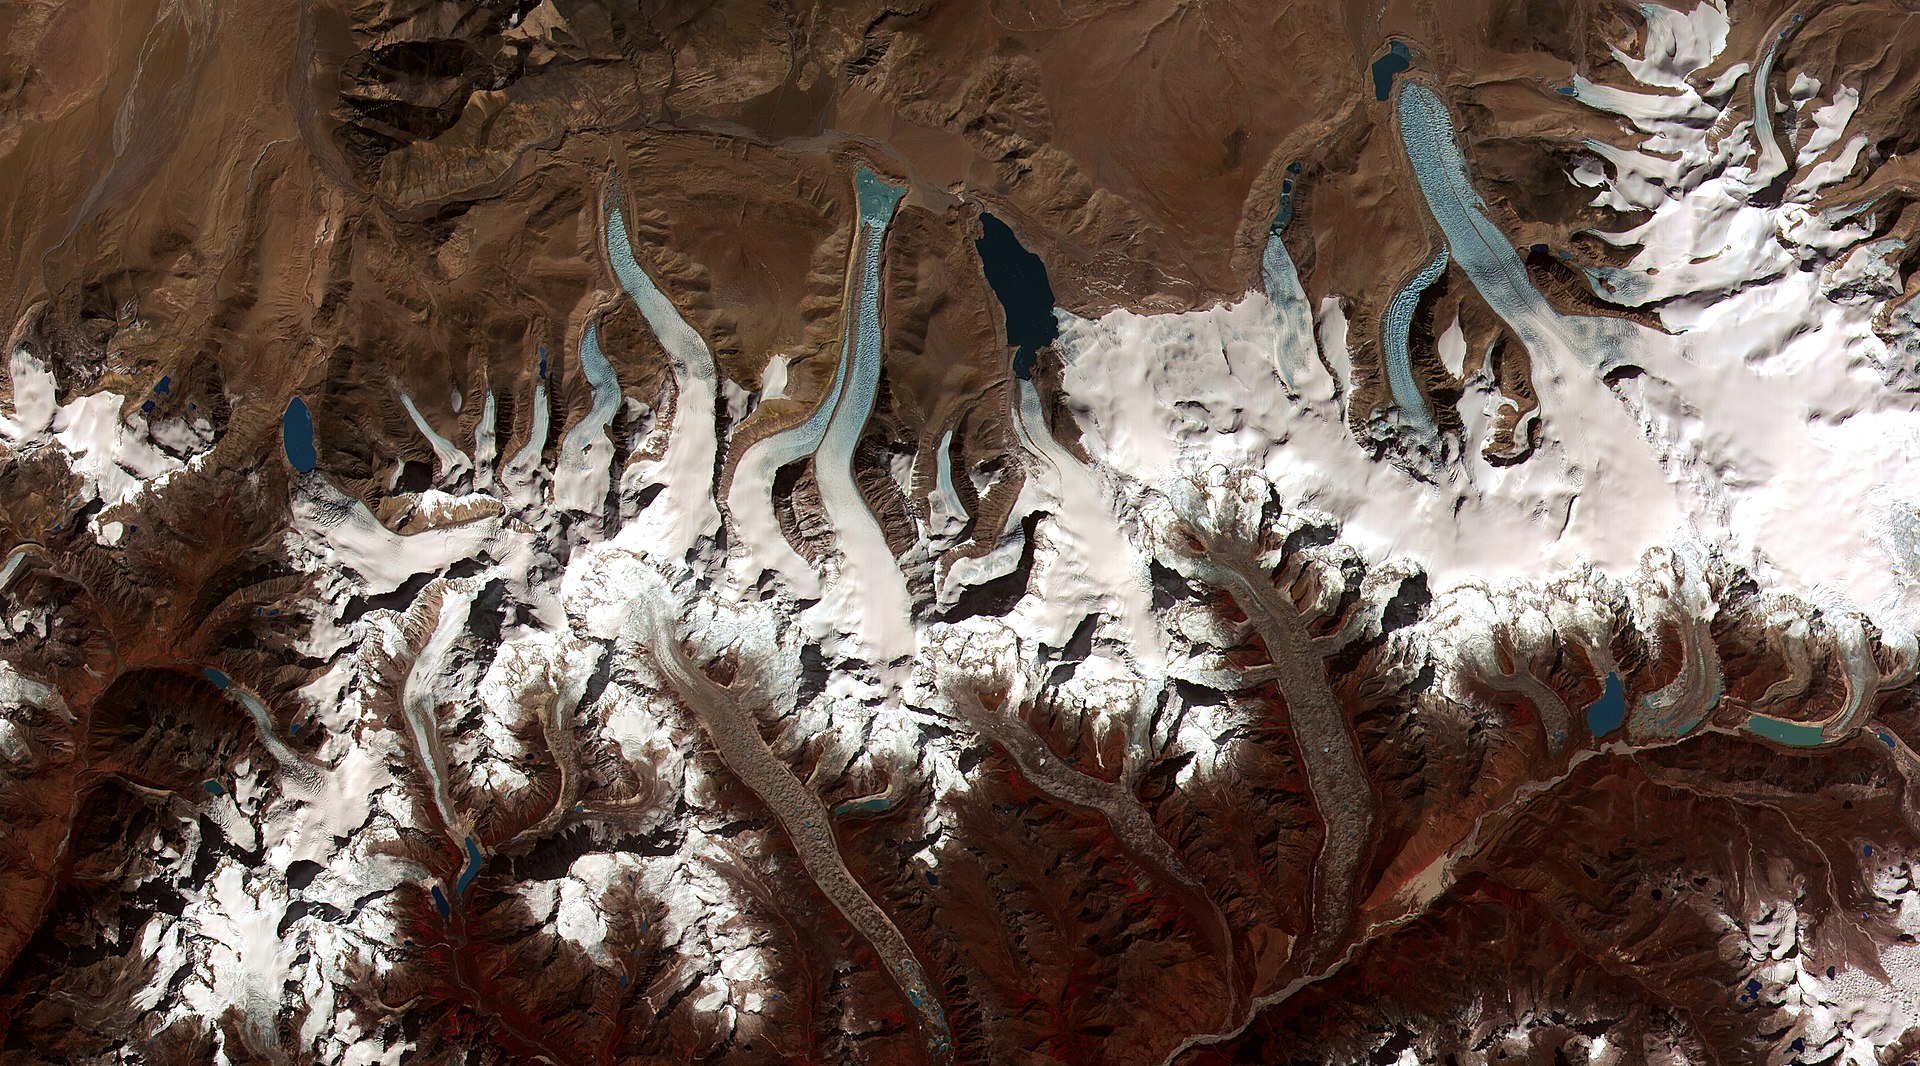 La tierra sigue girando Marc Chalamanch-Glacial_lakes,_Bhutan Esta imagen de la NASA muestra las partes derretidas (lagos) en las faldas del glaciar de Bután en el Himalaya.